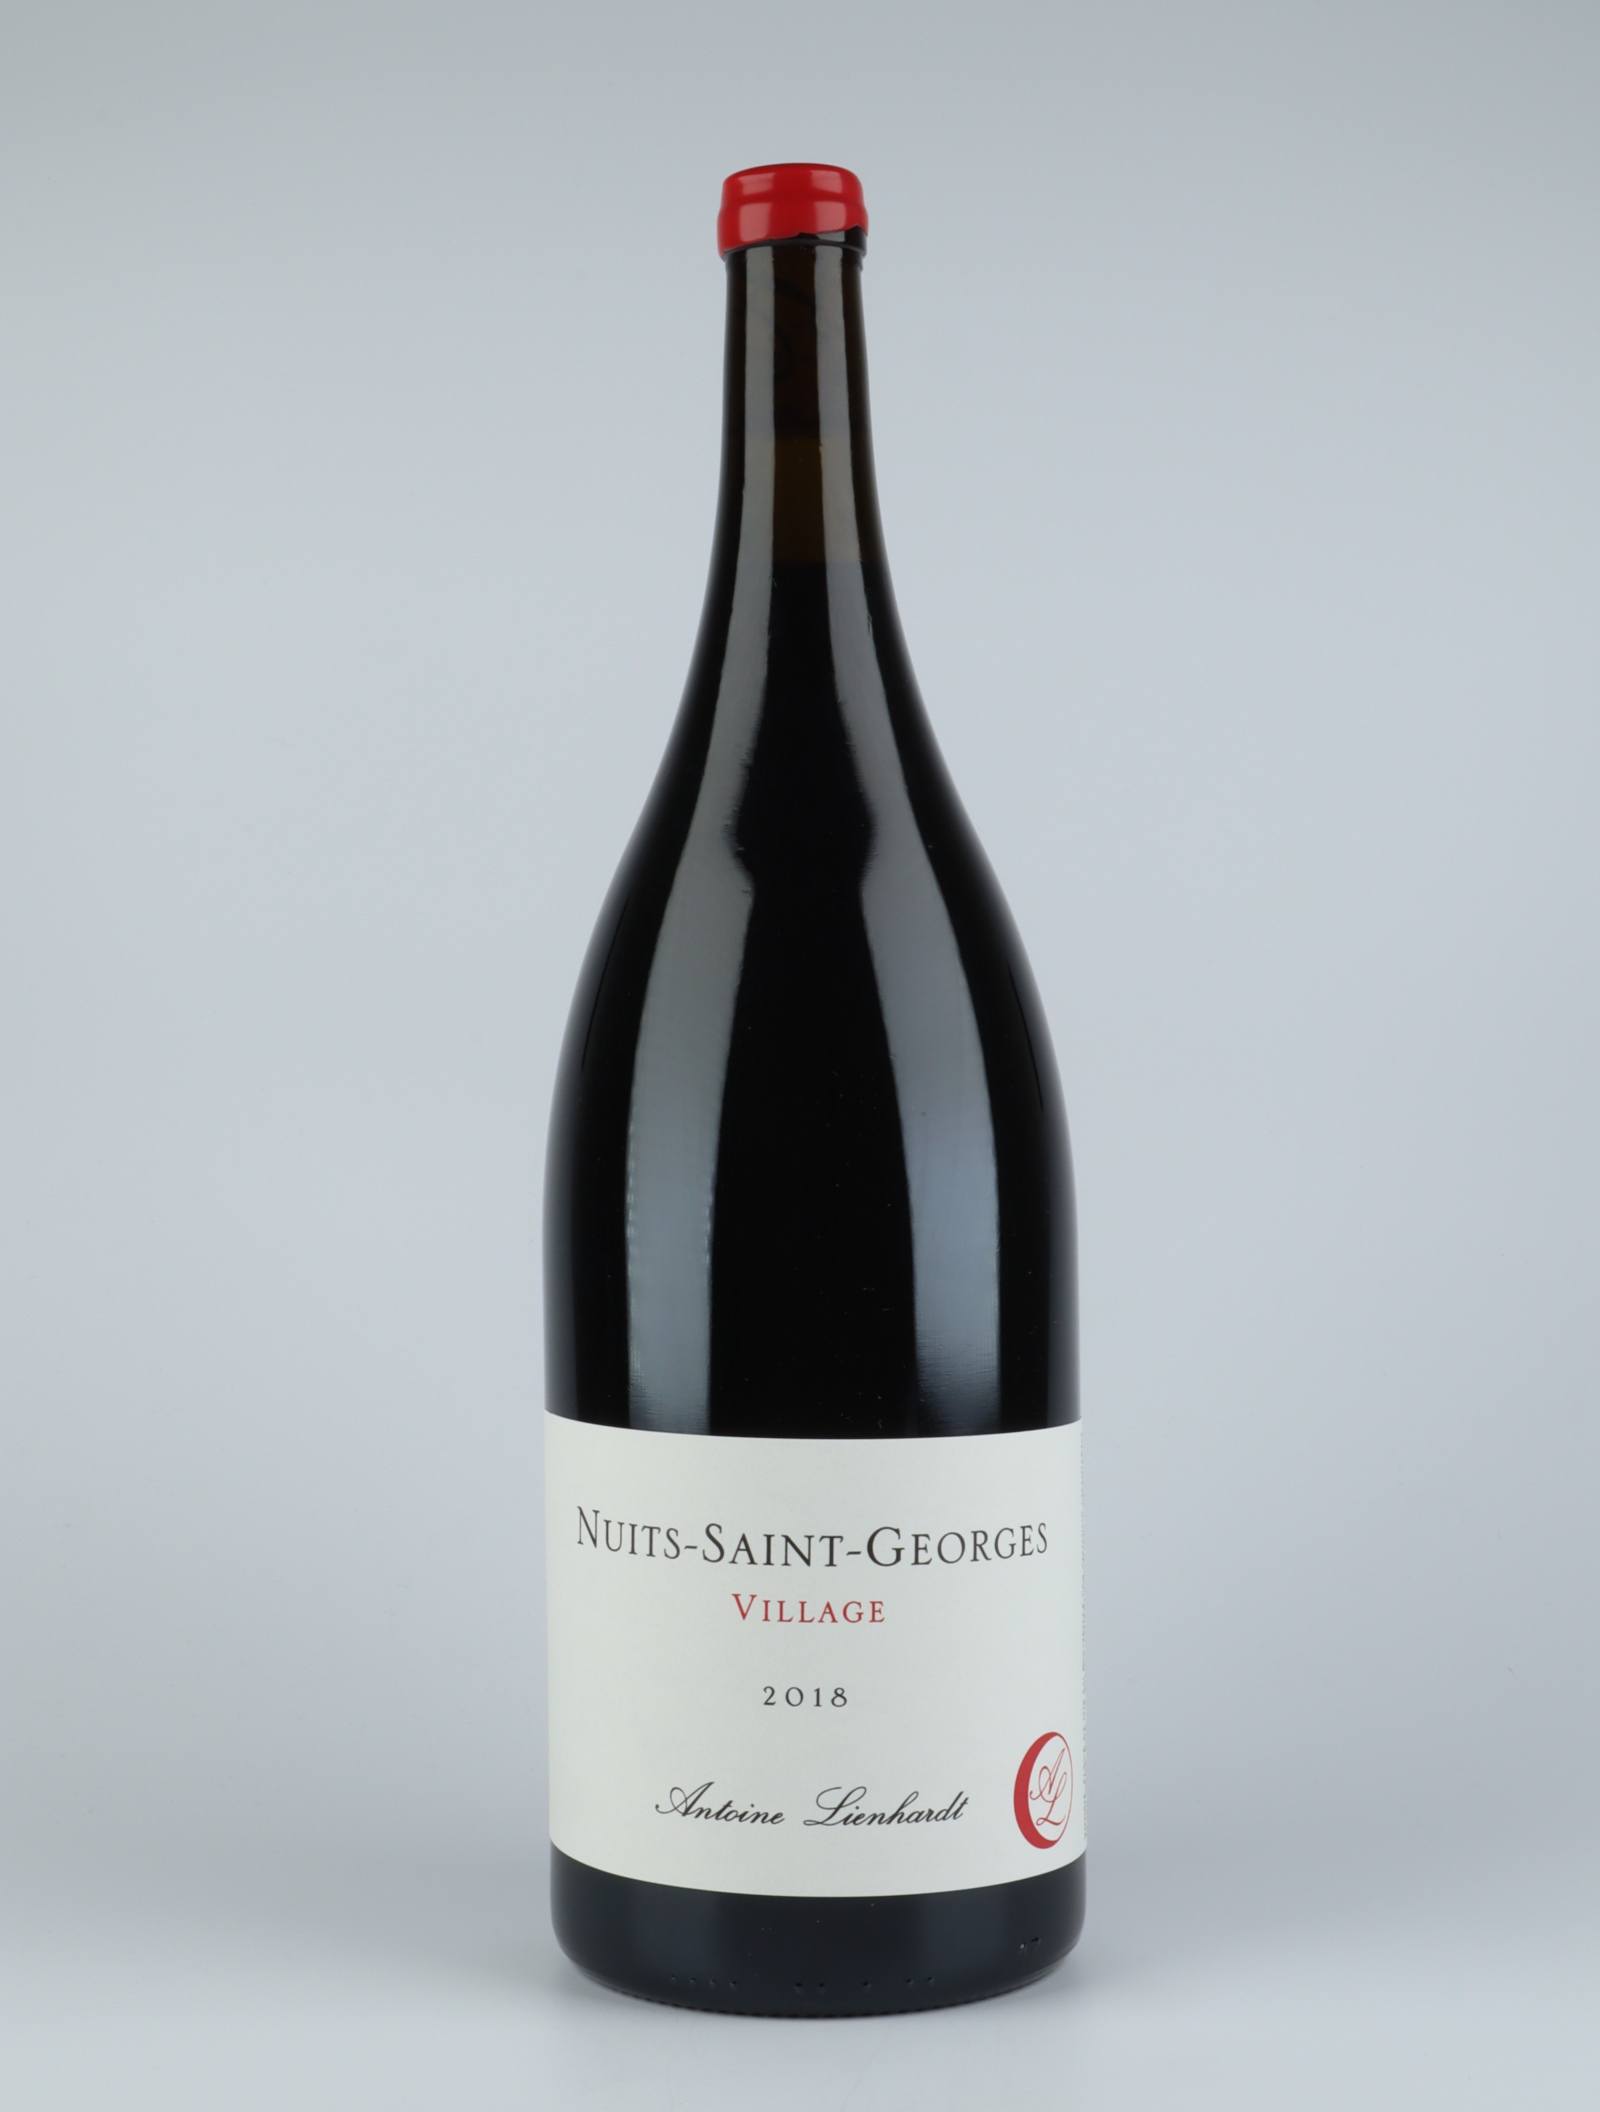 En flaske 2018 Nuits Saint Georges Rødvin fra Antoine Lienhardt, Bourgogne i Frankrig